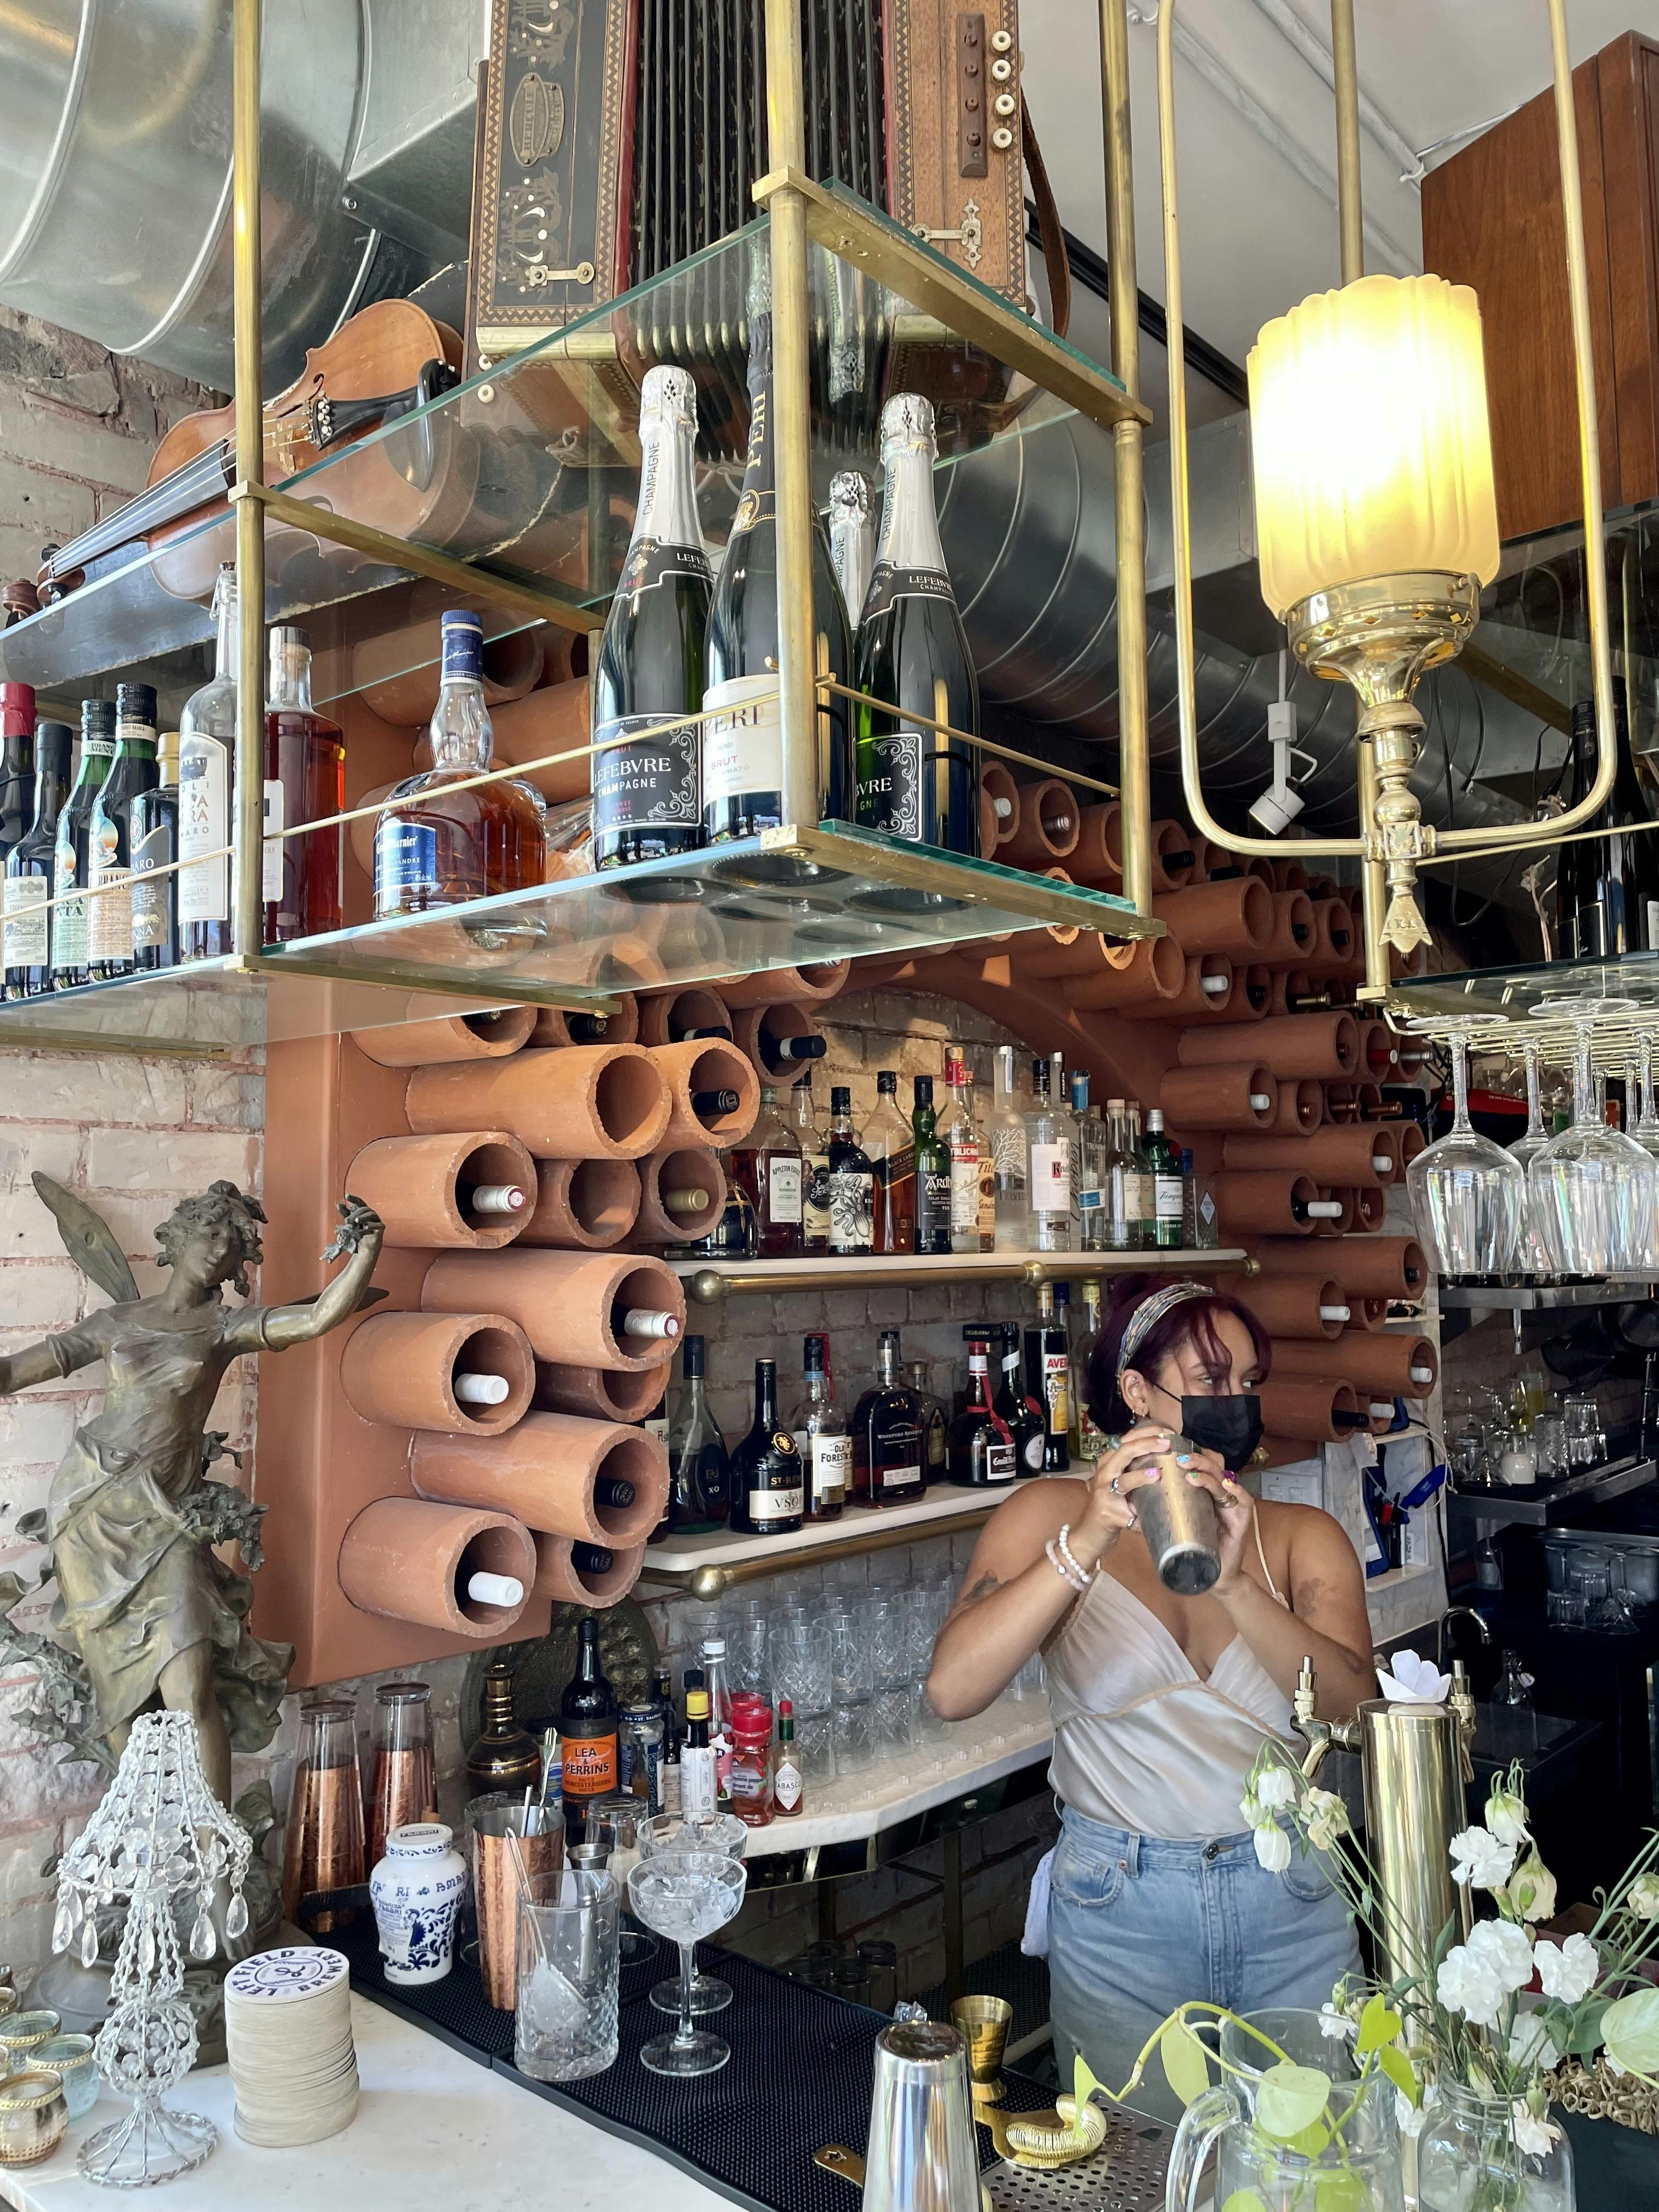 The Gardel Bar